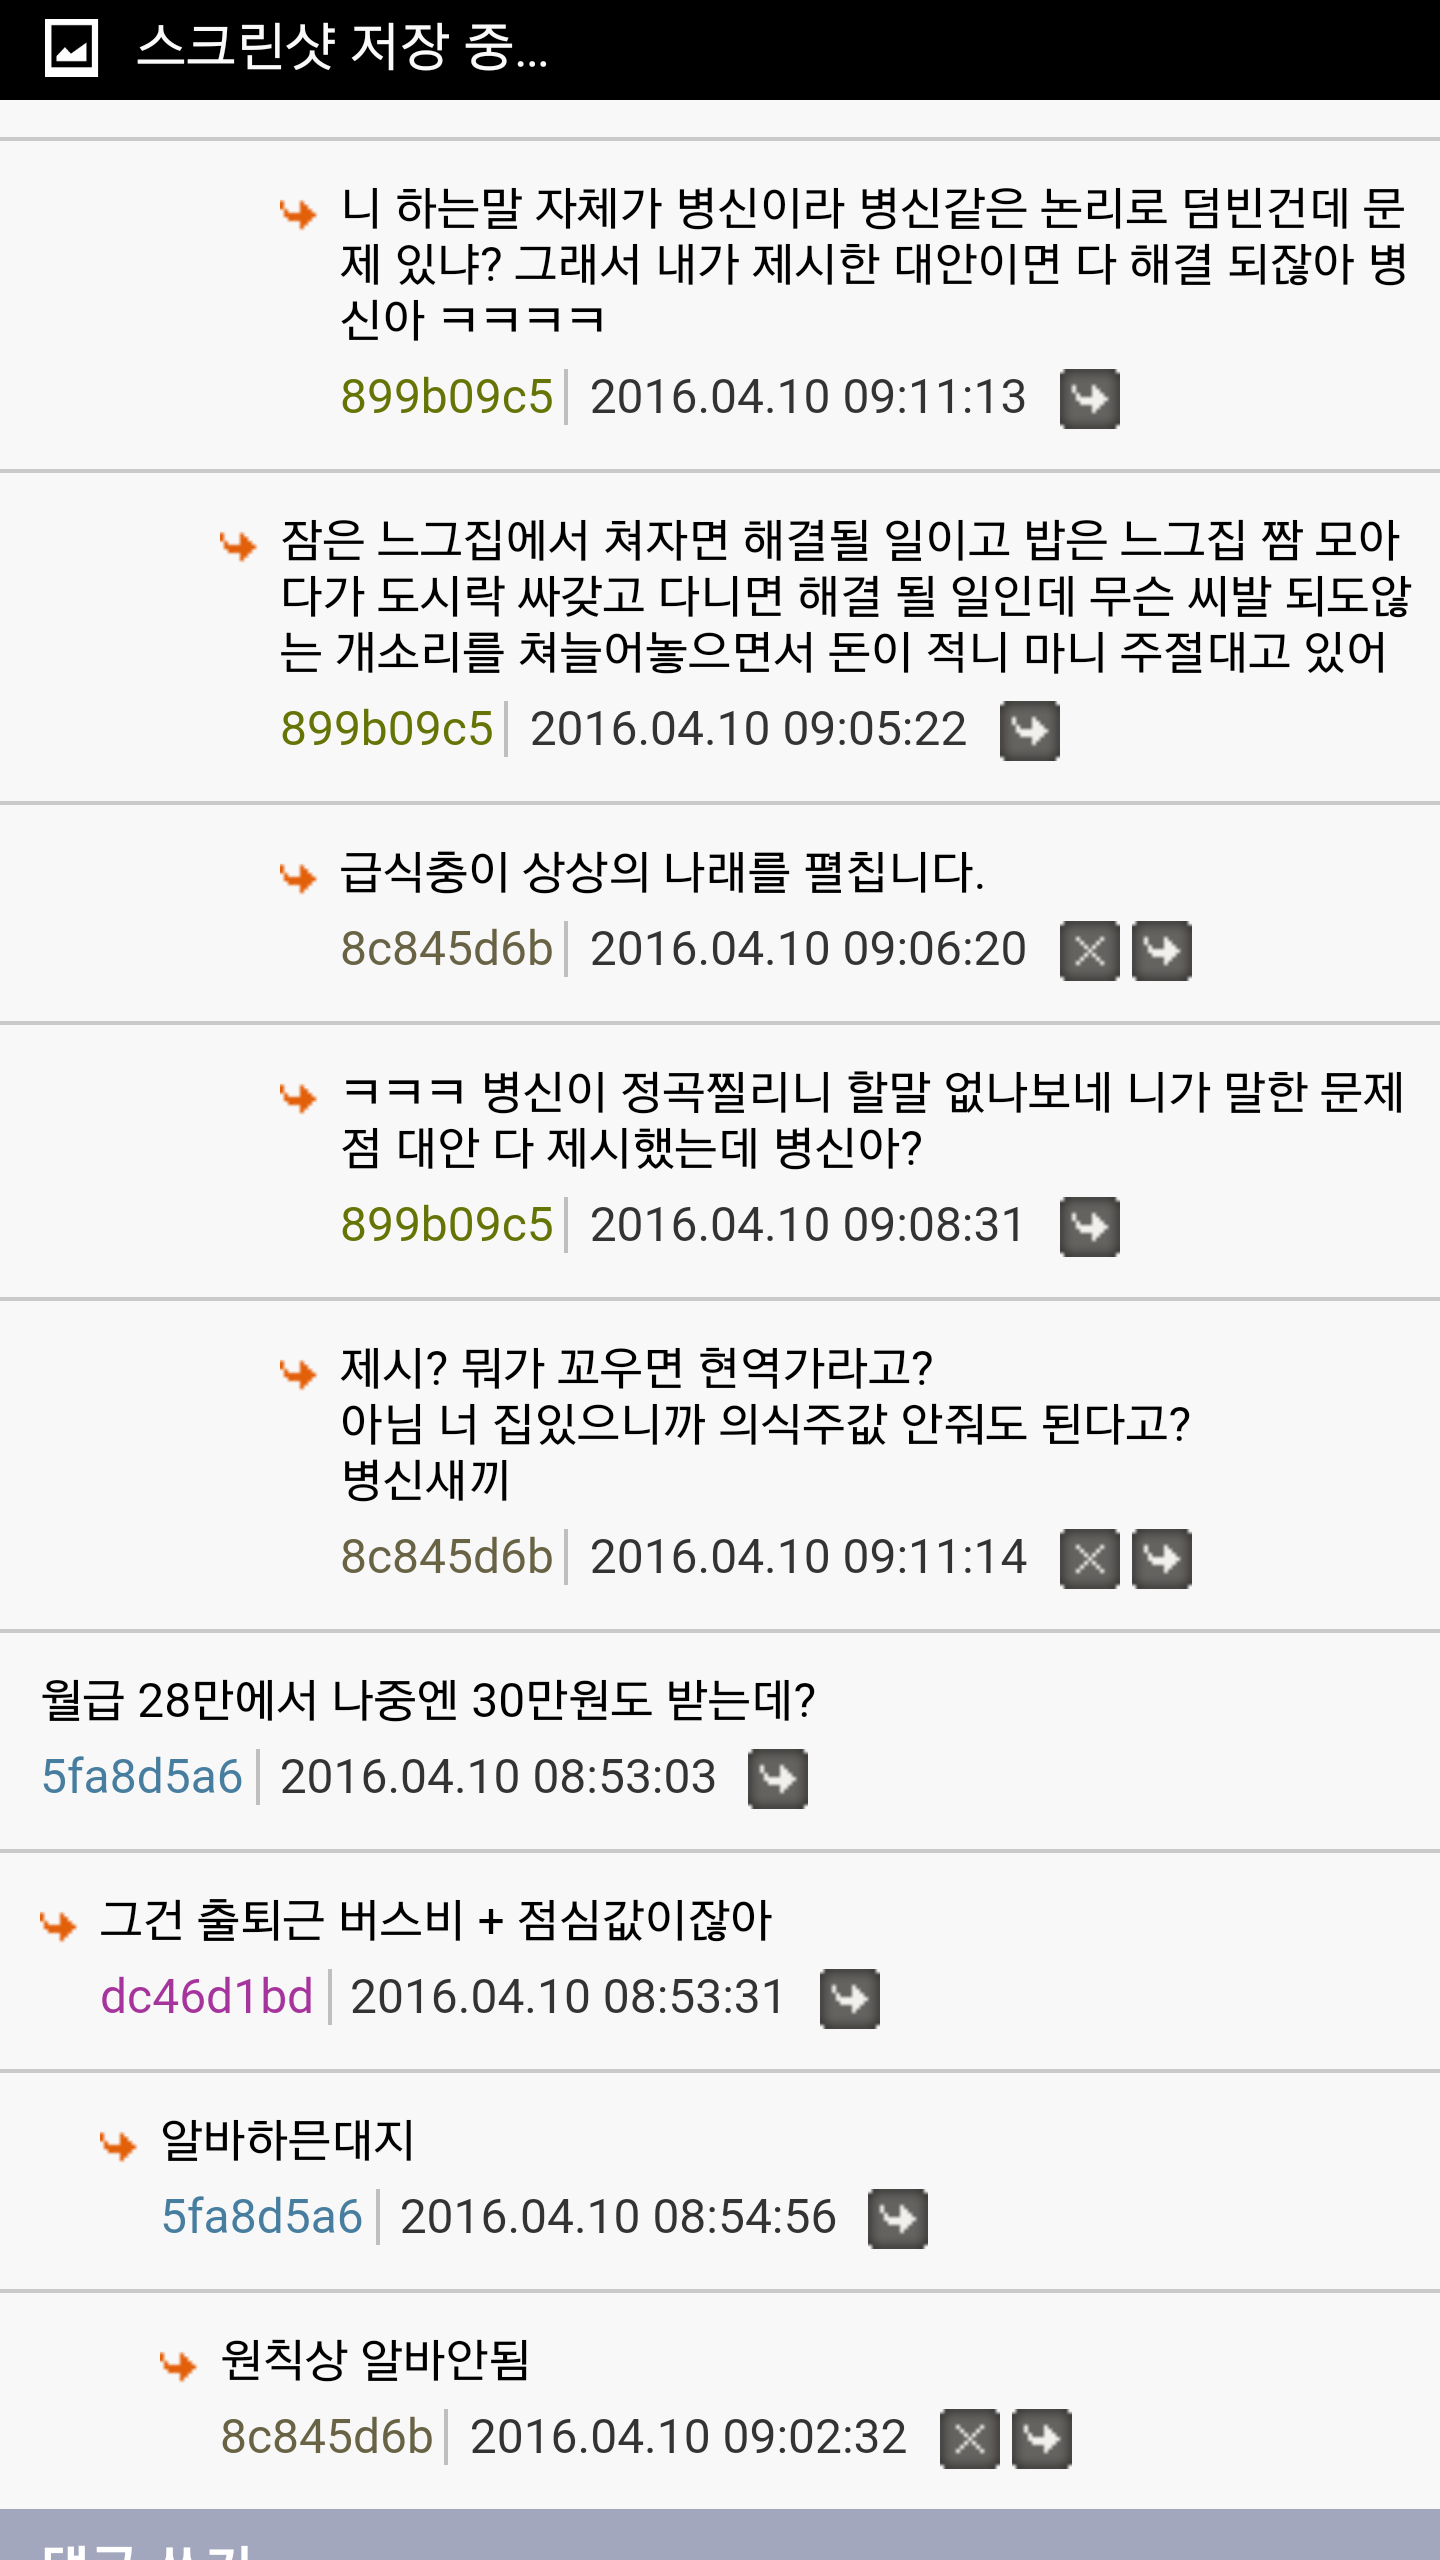 Screenshot_2016-04-10-09-11-40.png : 익게 공익월급문제....헬조선